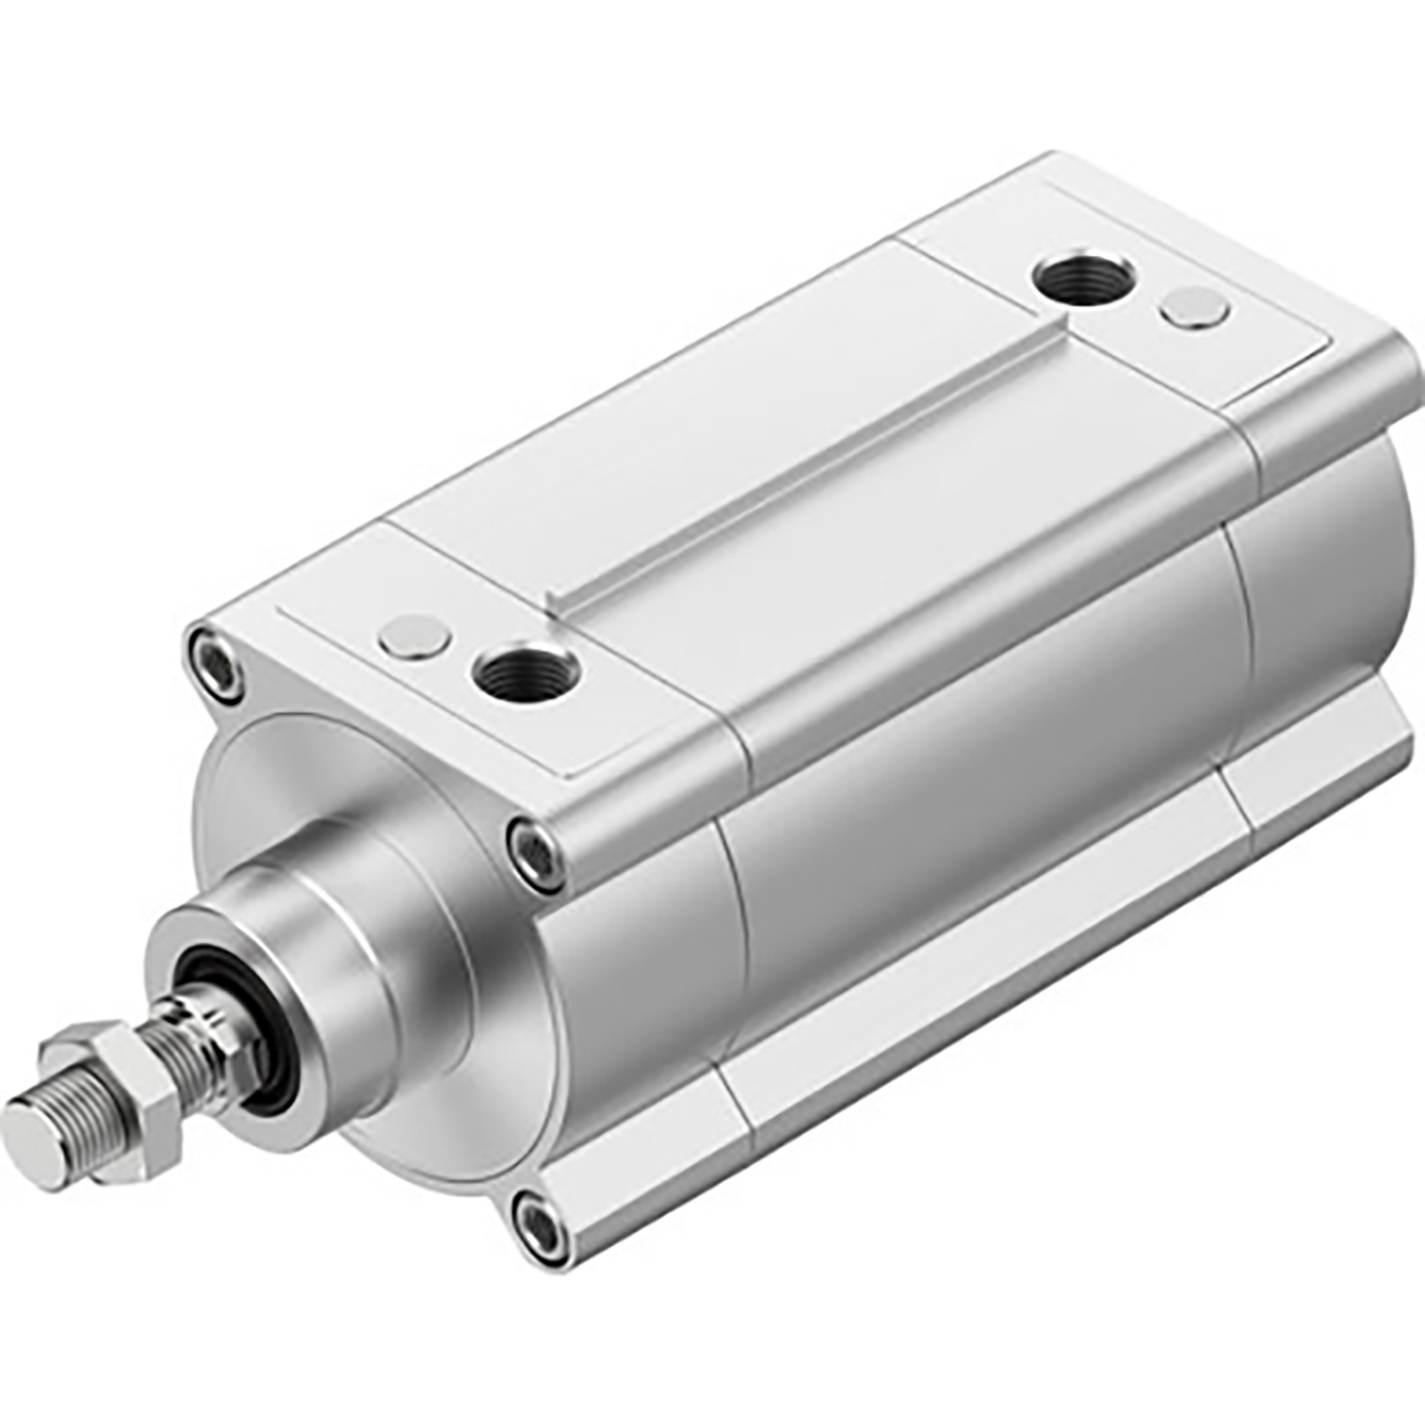 1/2" BSPP Standards-Based Cylinder